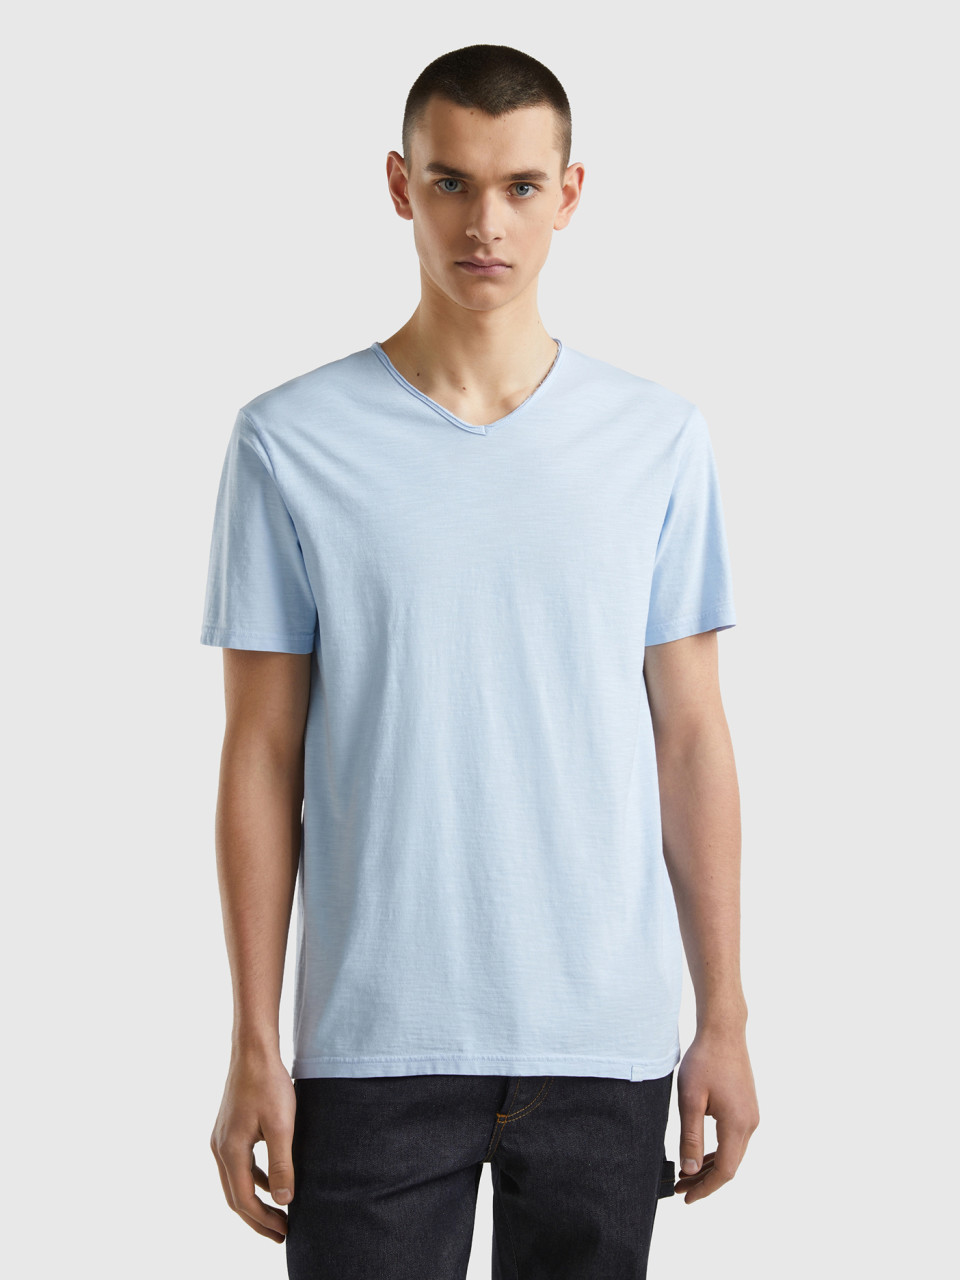 Benetton, V-neck T-shirt In 100% Cotton, Sky Blue, Men